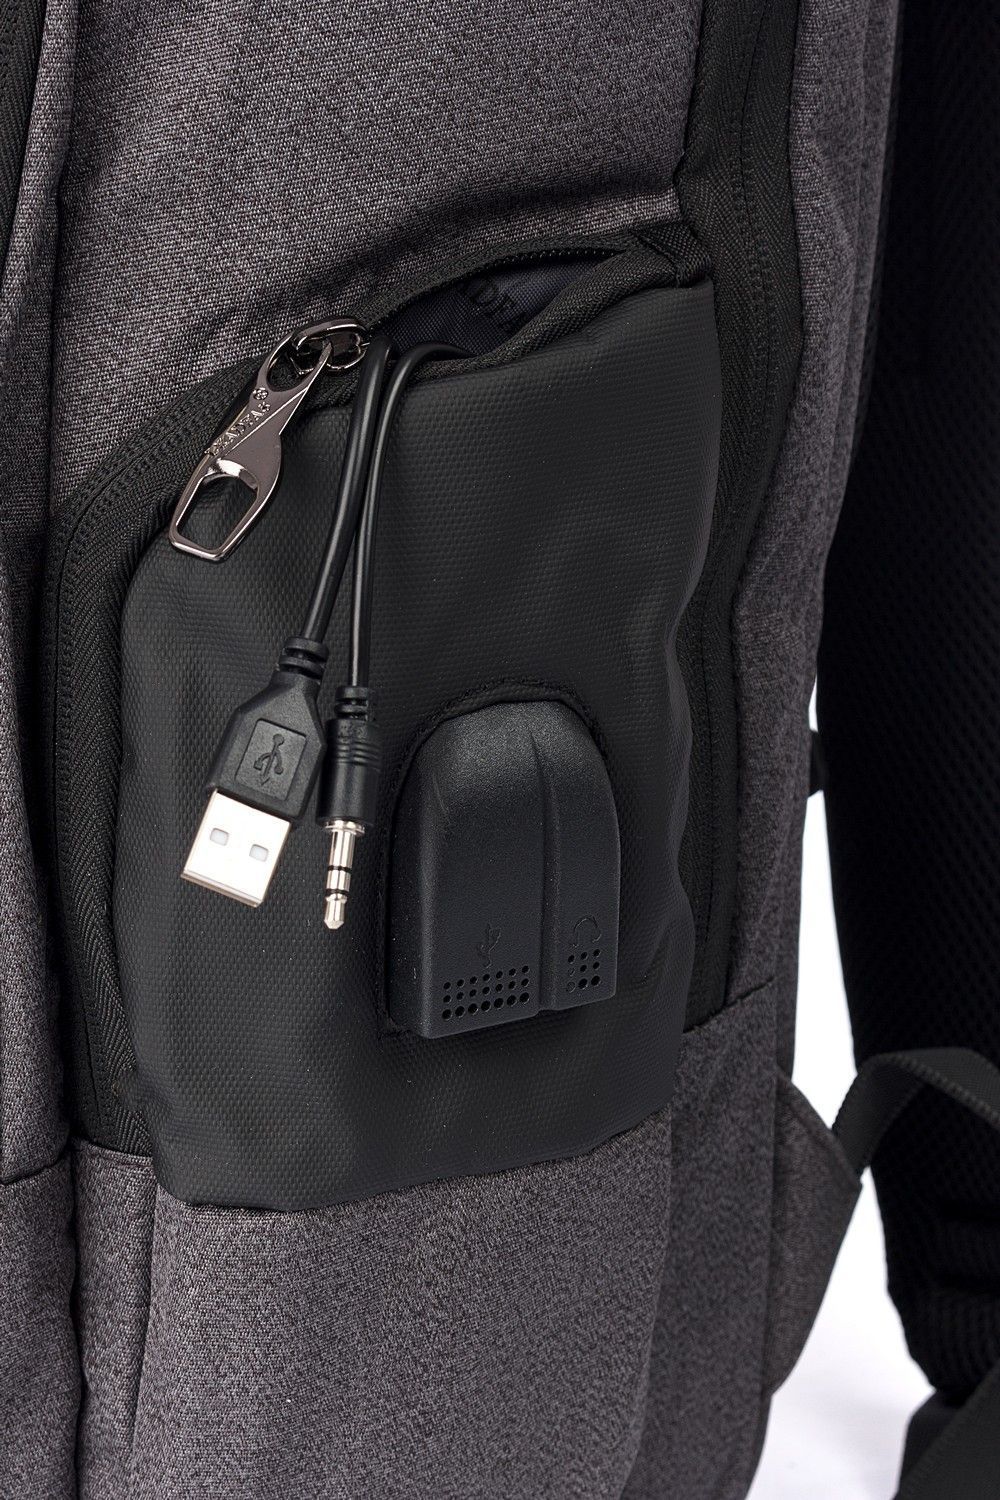 Рюкзак мужской городской, темно-серый, для ноутбука, с USB портом, объем 18л